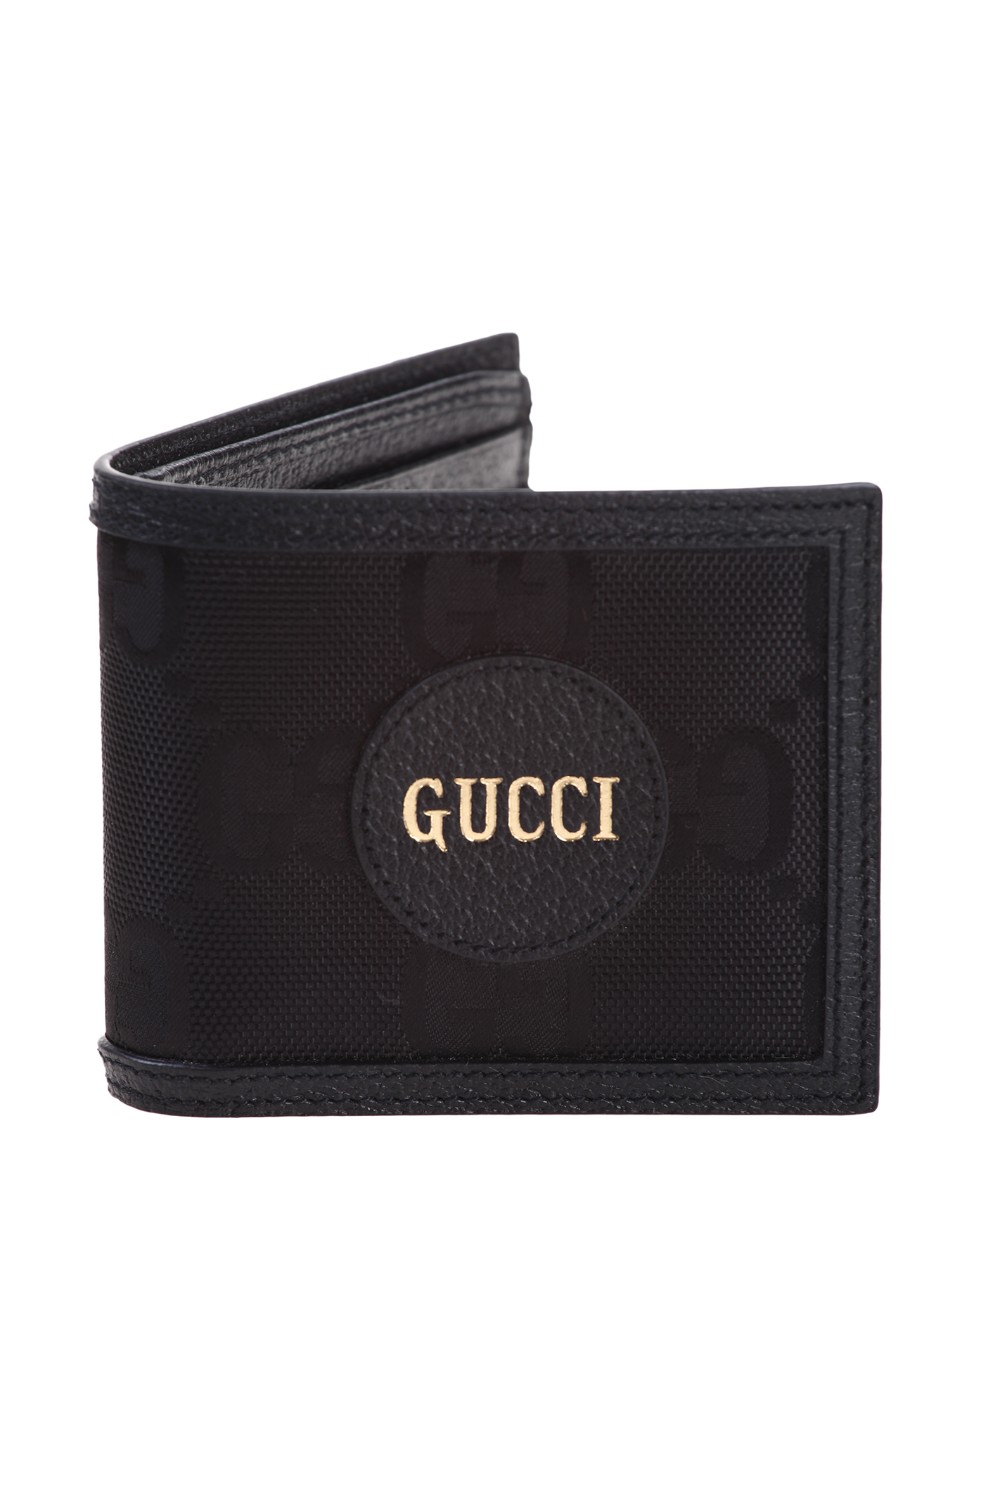 shop GUCCI  Portafoglio: Gucci portafoglio " Gucci off the Grid " in GG nero.
Dettaglio in pelle con logo Gucci.
Interno: sei fessure per carte e uno scomparto per banconote.
Aperto: L 21 cm x A 9 cm; chiuso: L 11 cm x A 9 cm.
Made in Italy.. 625573 H9HAN-1000 number 268373